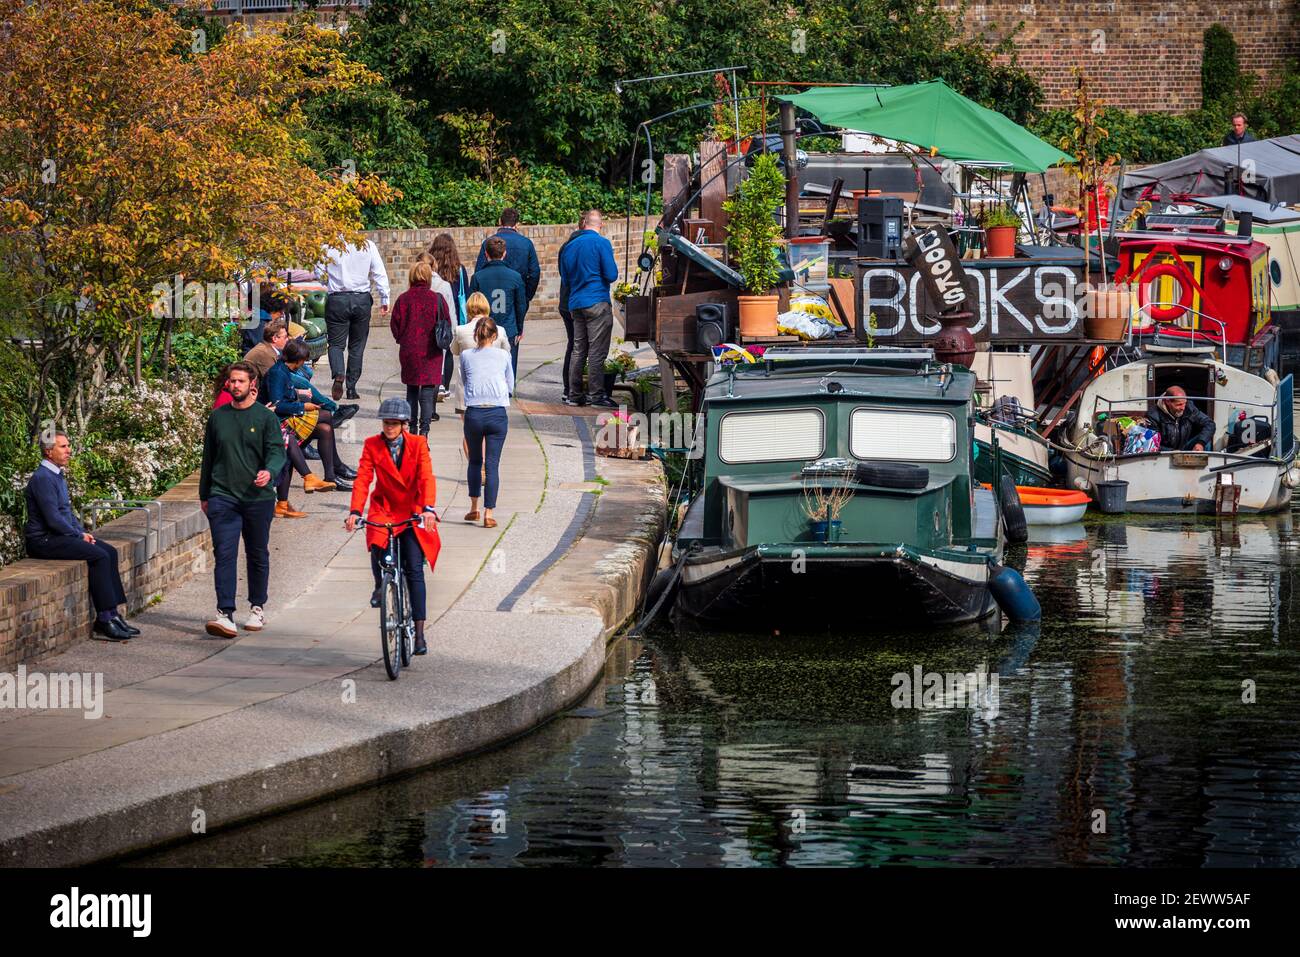 London BookBarge Regents Canal. La librería flotante 'Word on the Water' en el circuito de agua Regents Canal de Londres cerca de Kings Cross Station. Foto de stock